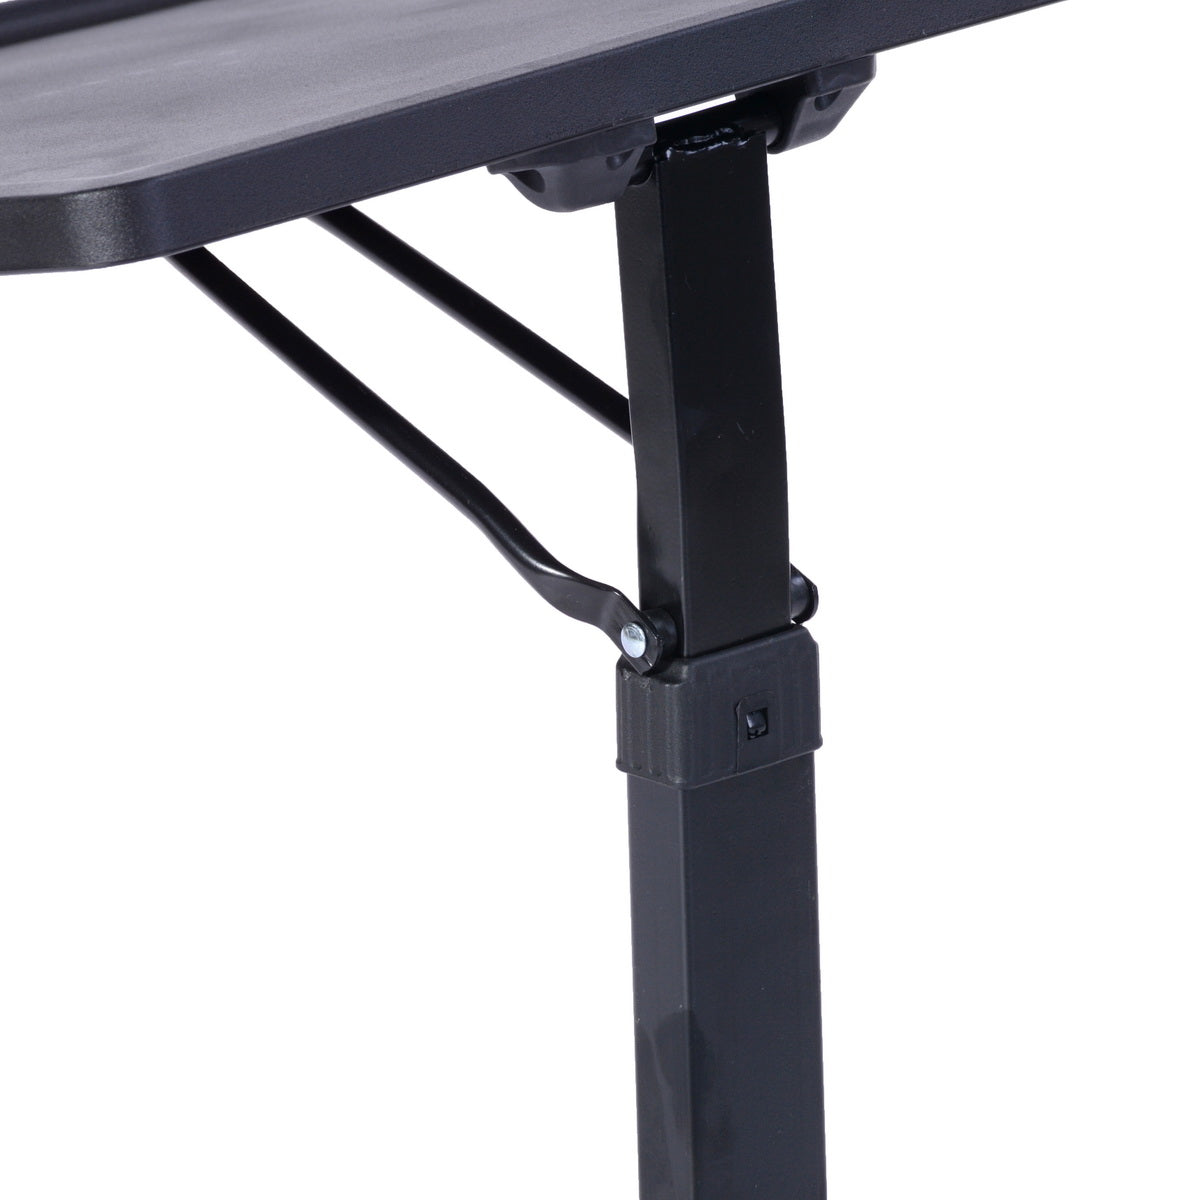 Table de lit/Support ordinateur pc repliable, hauteur réglable - TOUCHER